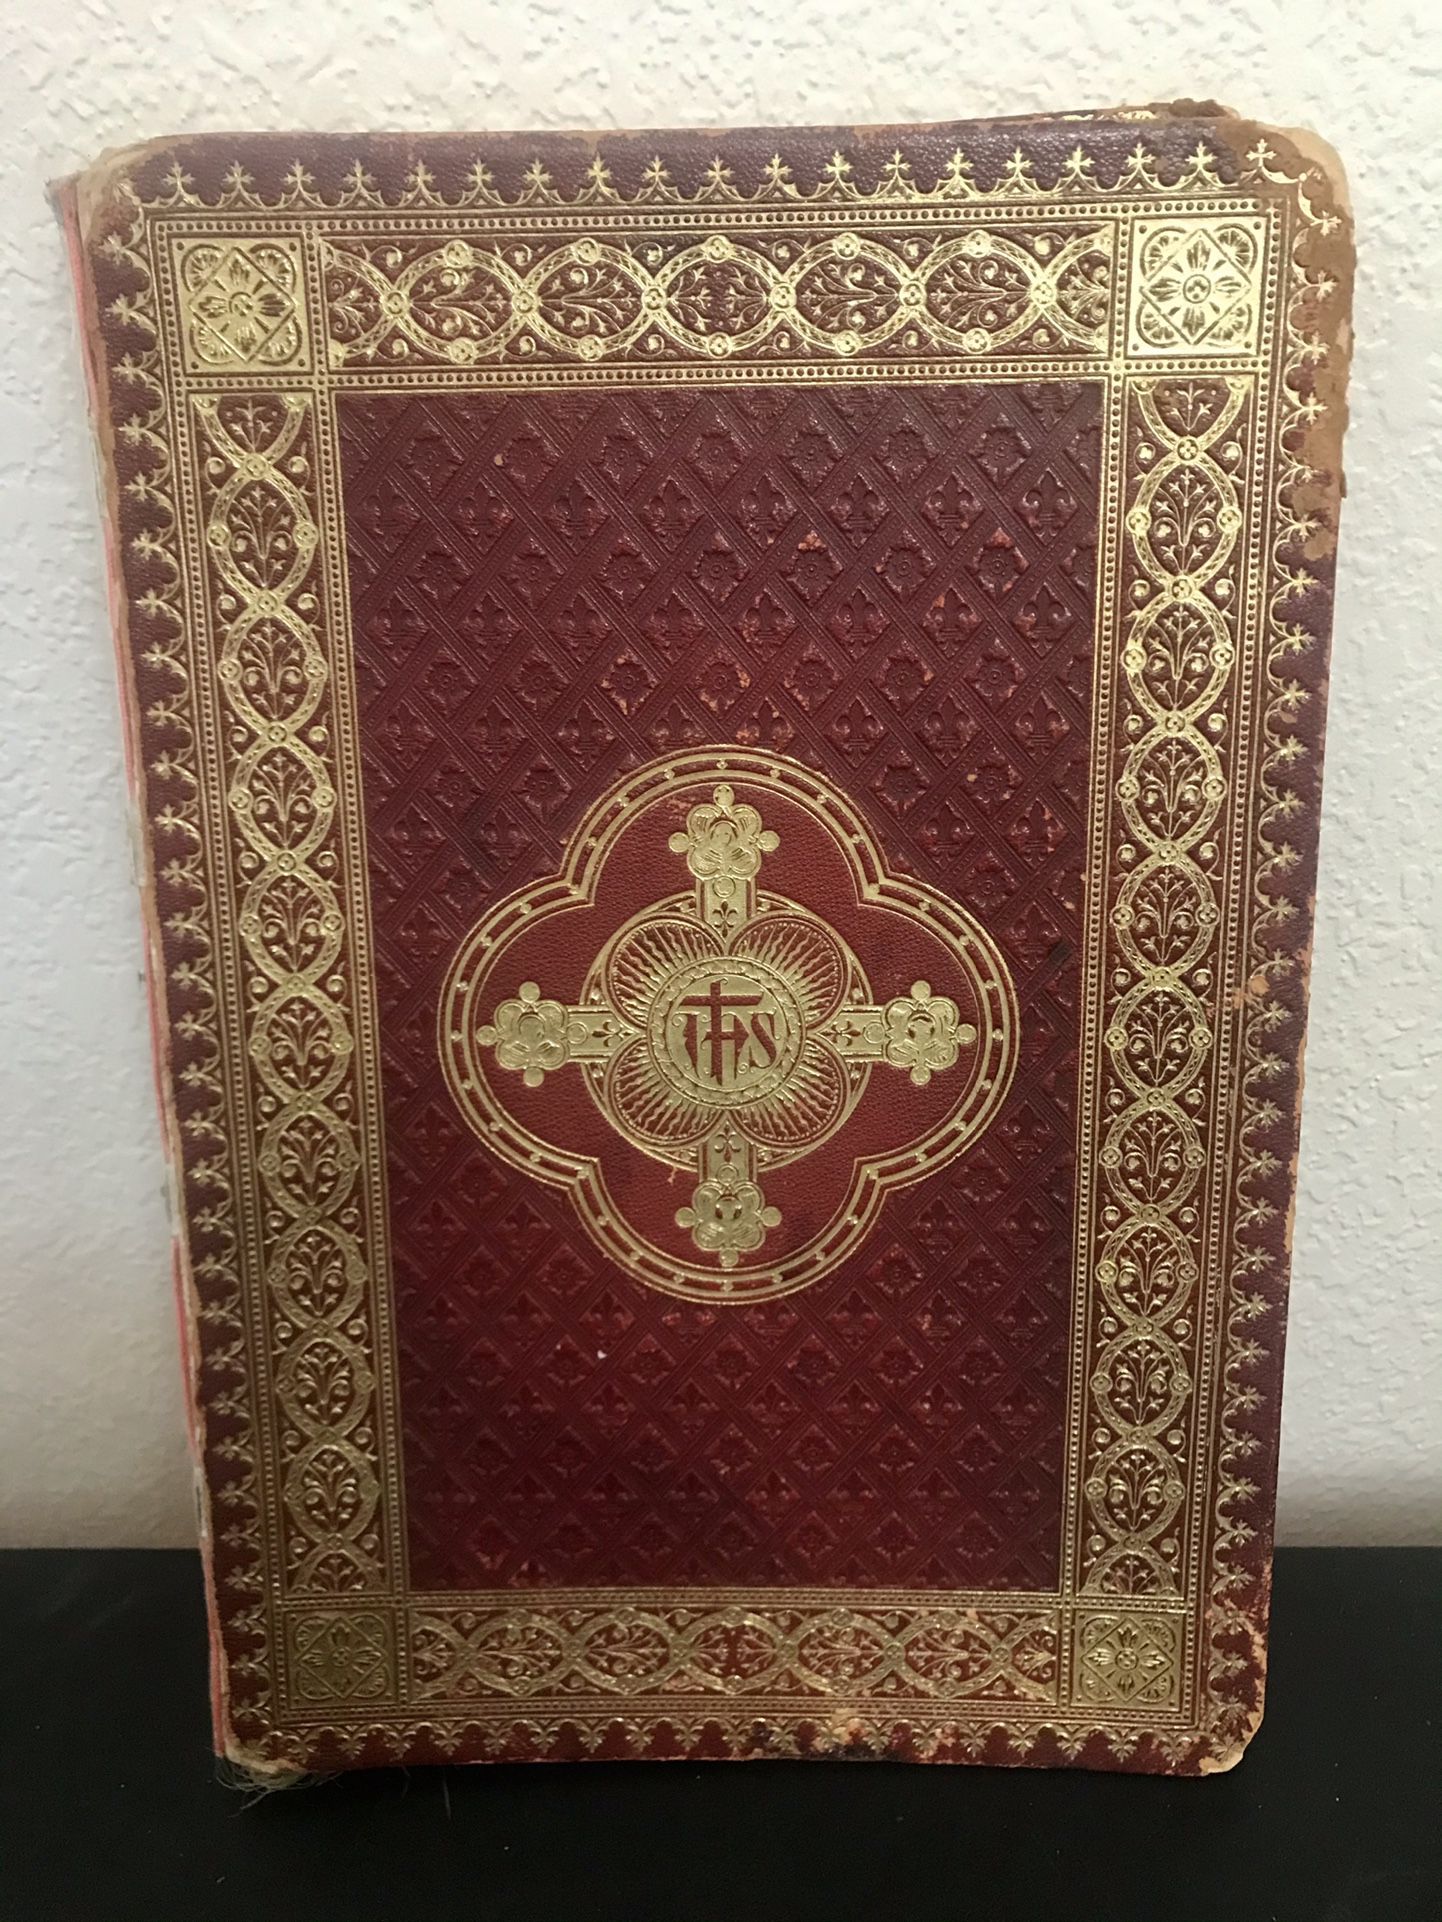 1902 Epistolae ET Evangelia Bible (14” X 10”)